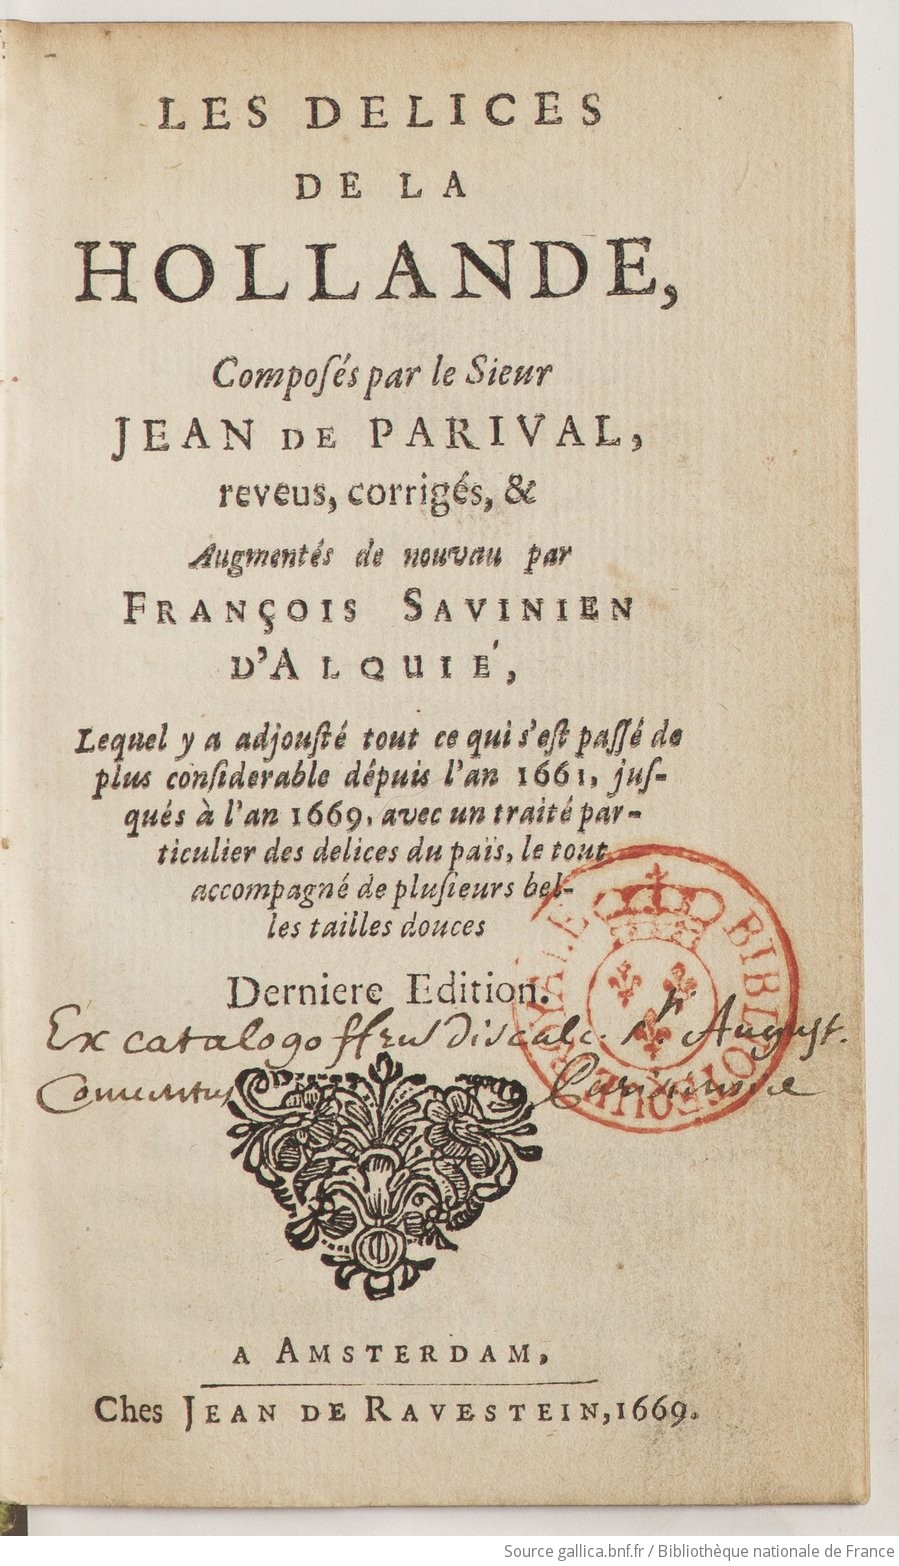 【買い方】Jean-Nicolas de Parival『Les delices de la Hollande』1662年刊 17世紀オランダガイドブック「オランダの喜び」ハンガリー貴族旧蔵書 画集